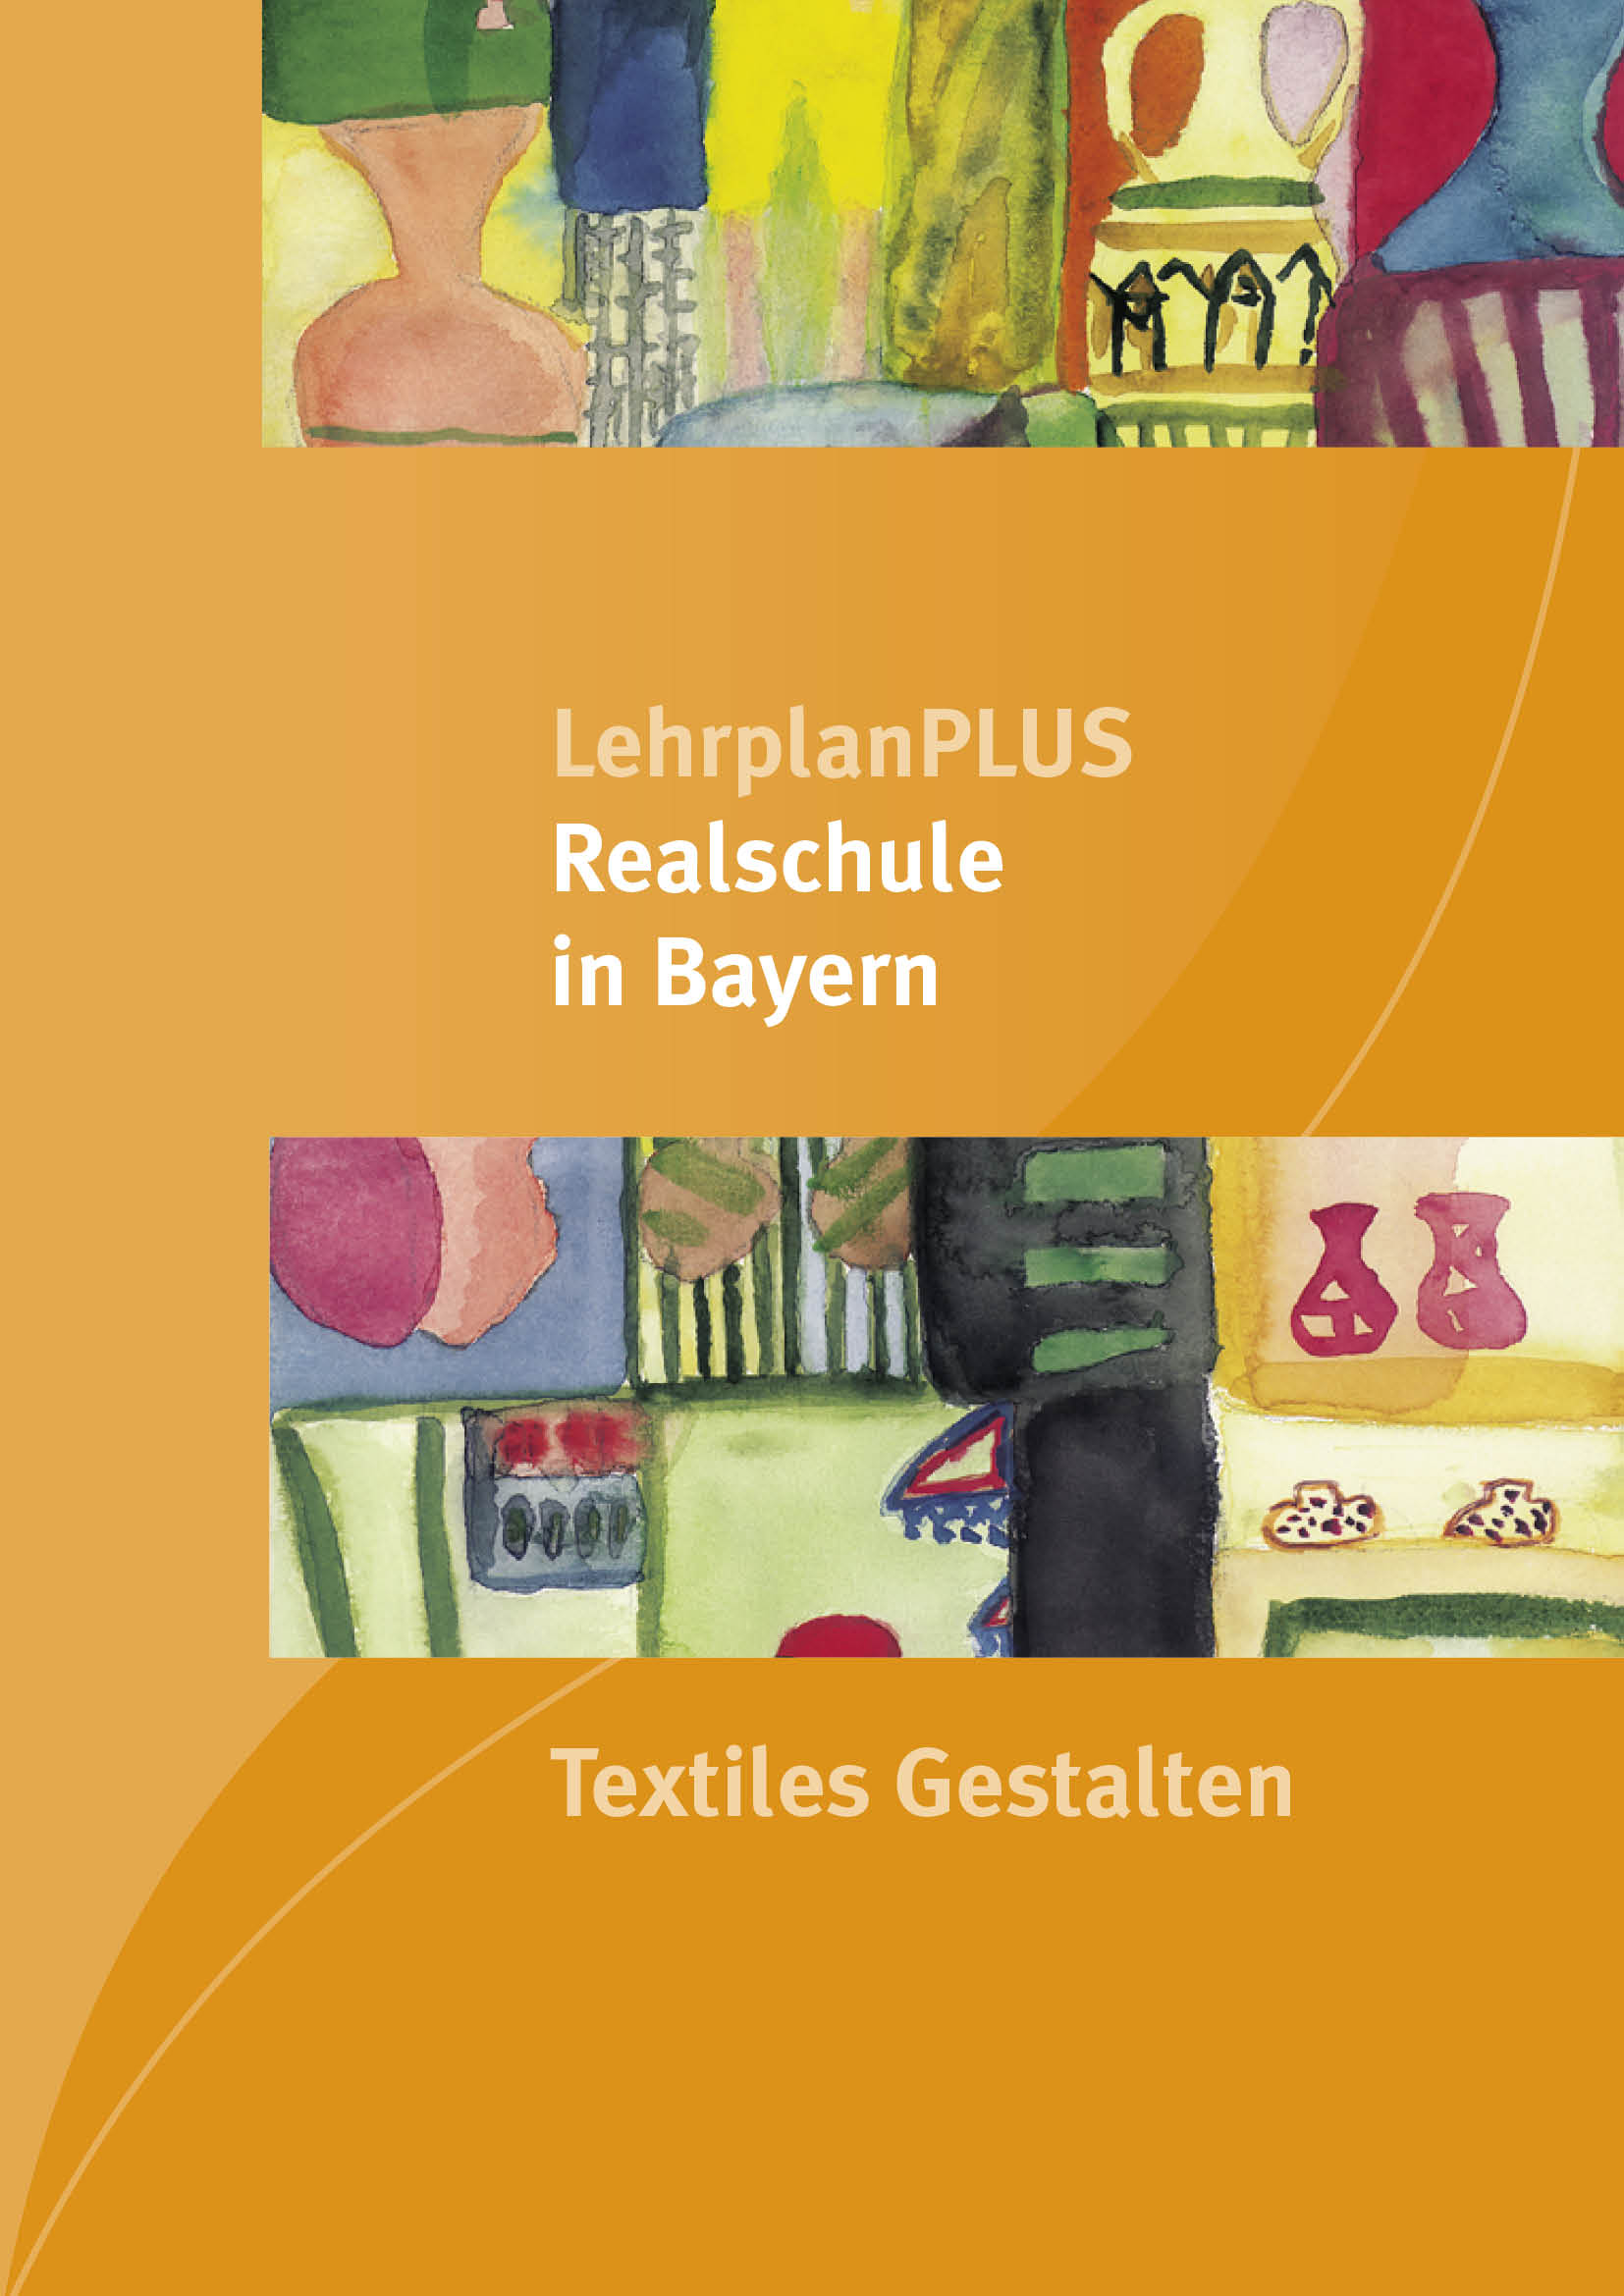 LehrplanPLUS Realschule in Bayern -Textiles Gestalten